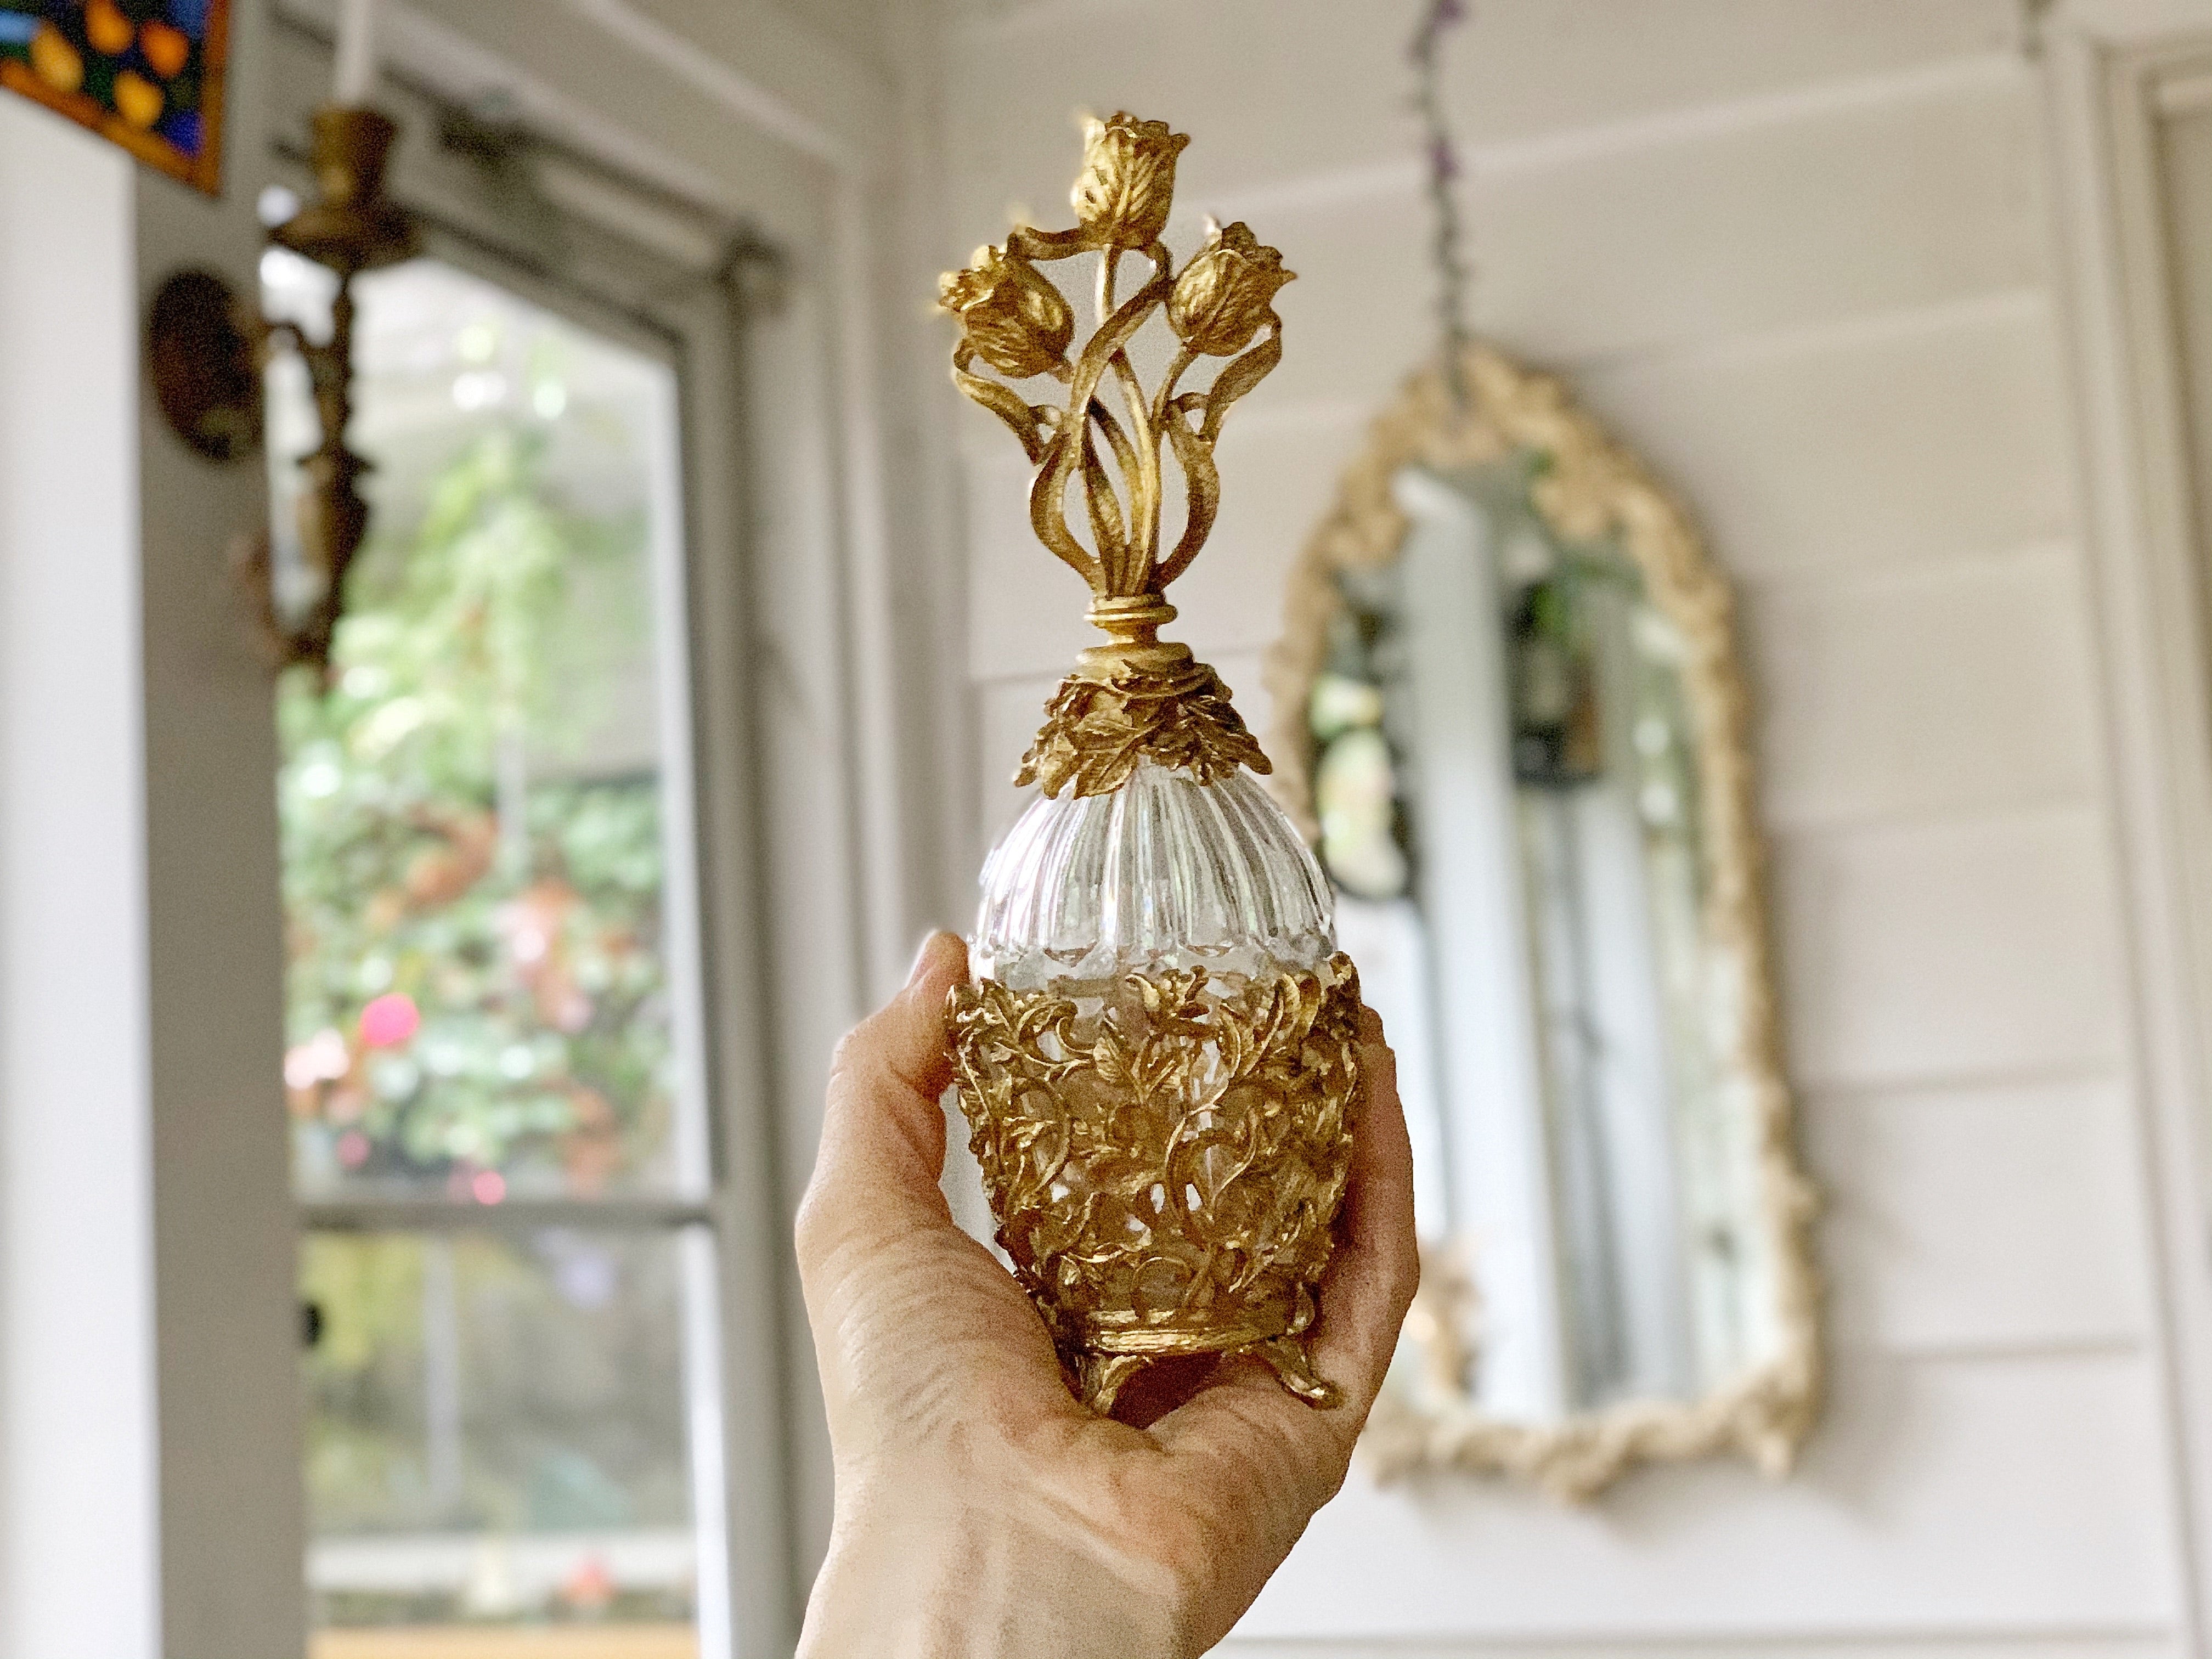 Antique Gold Tulip Floral Perfume Bottle